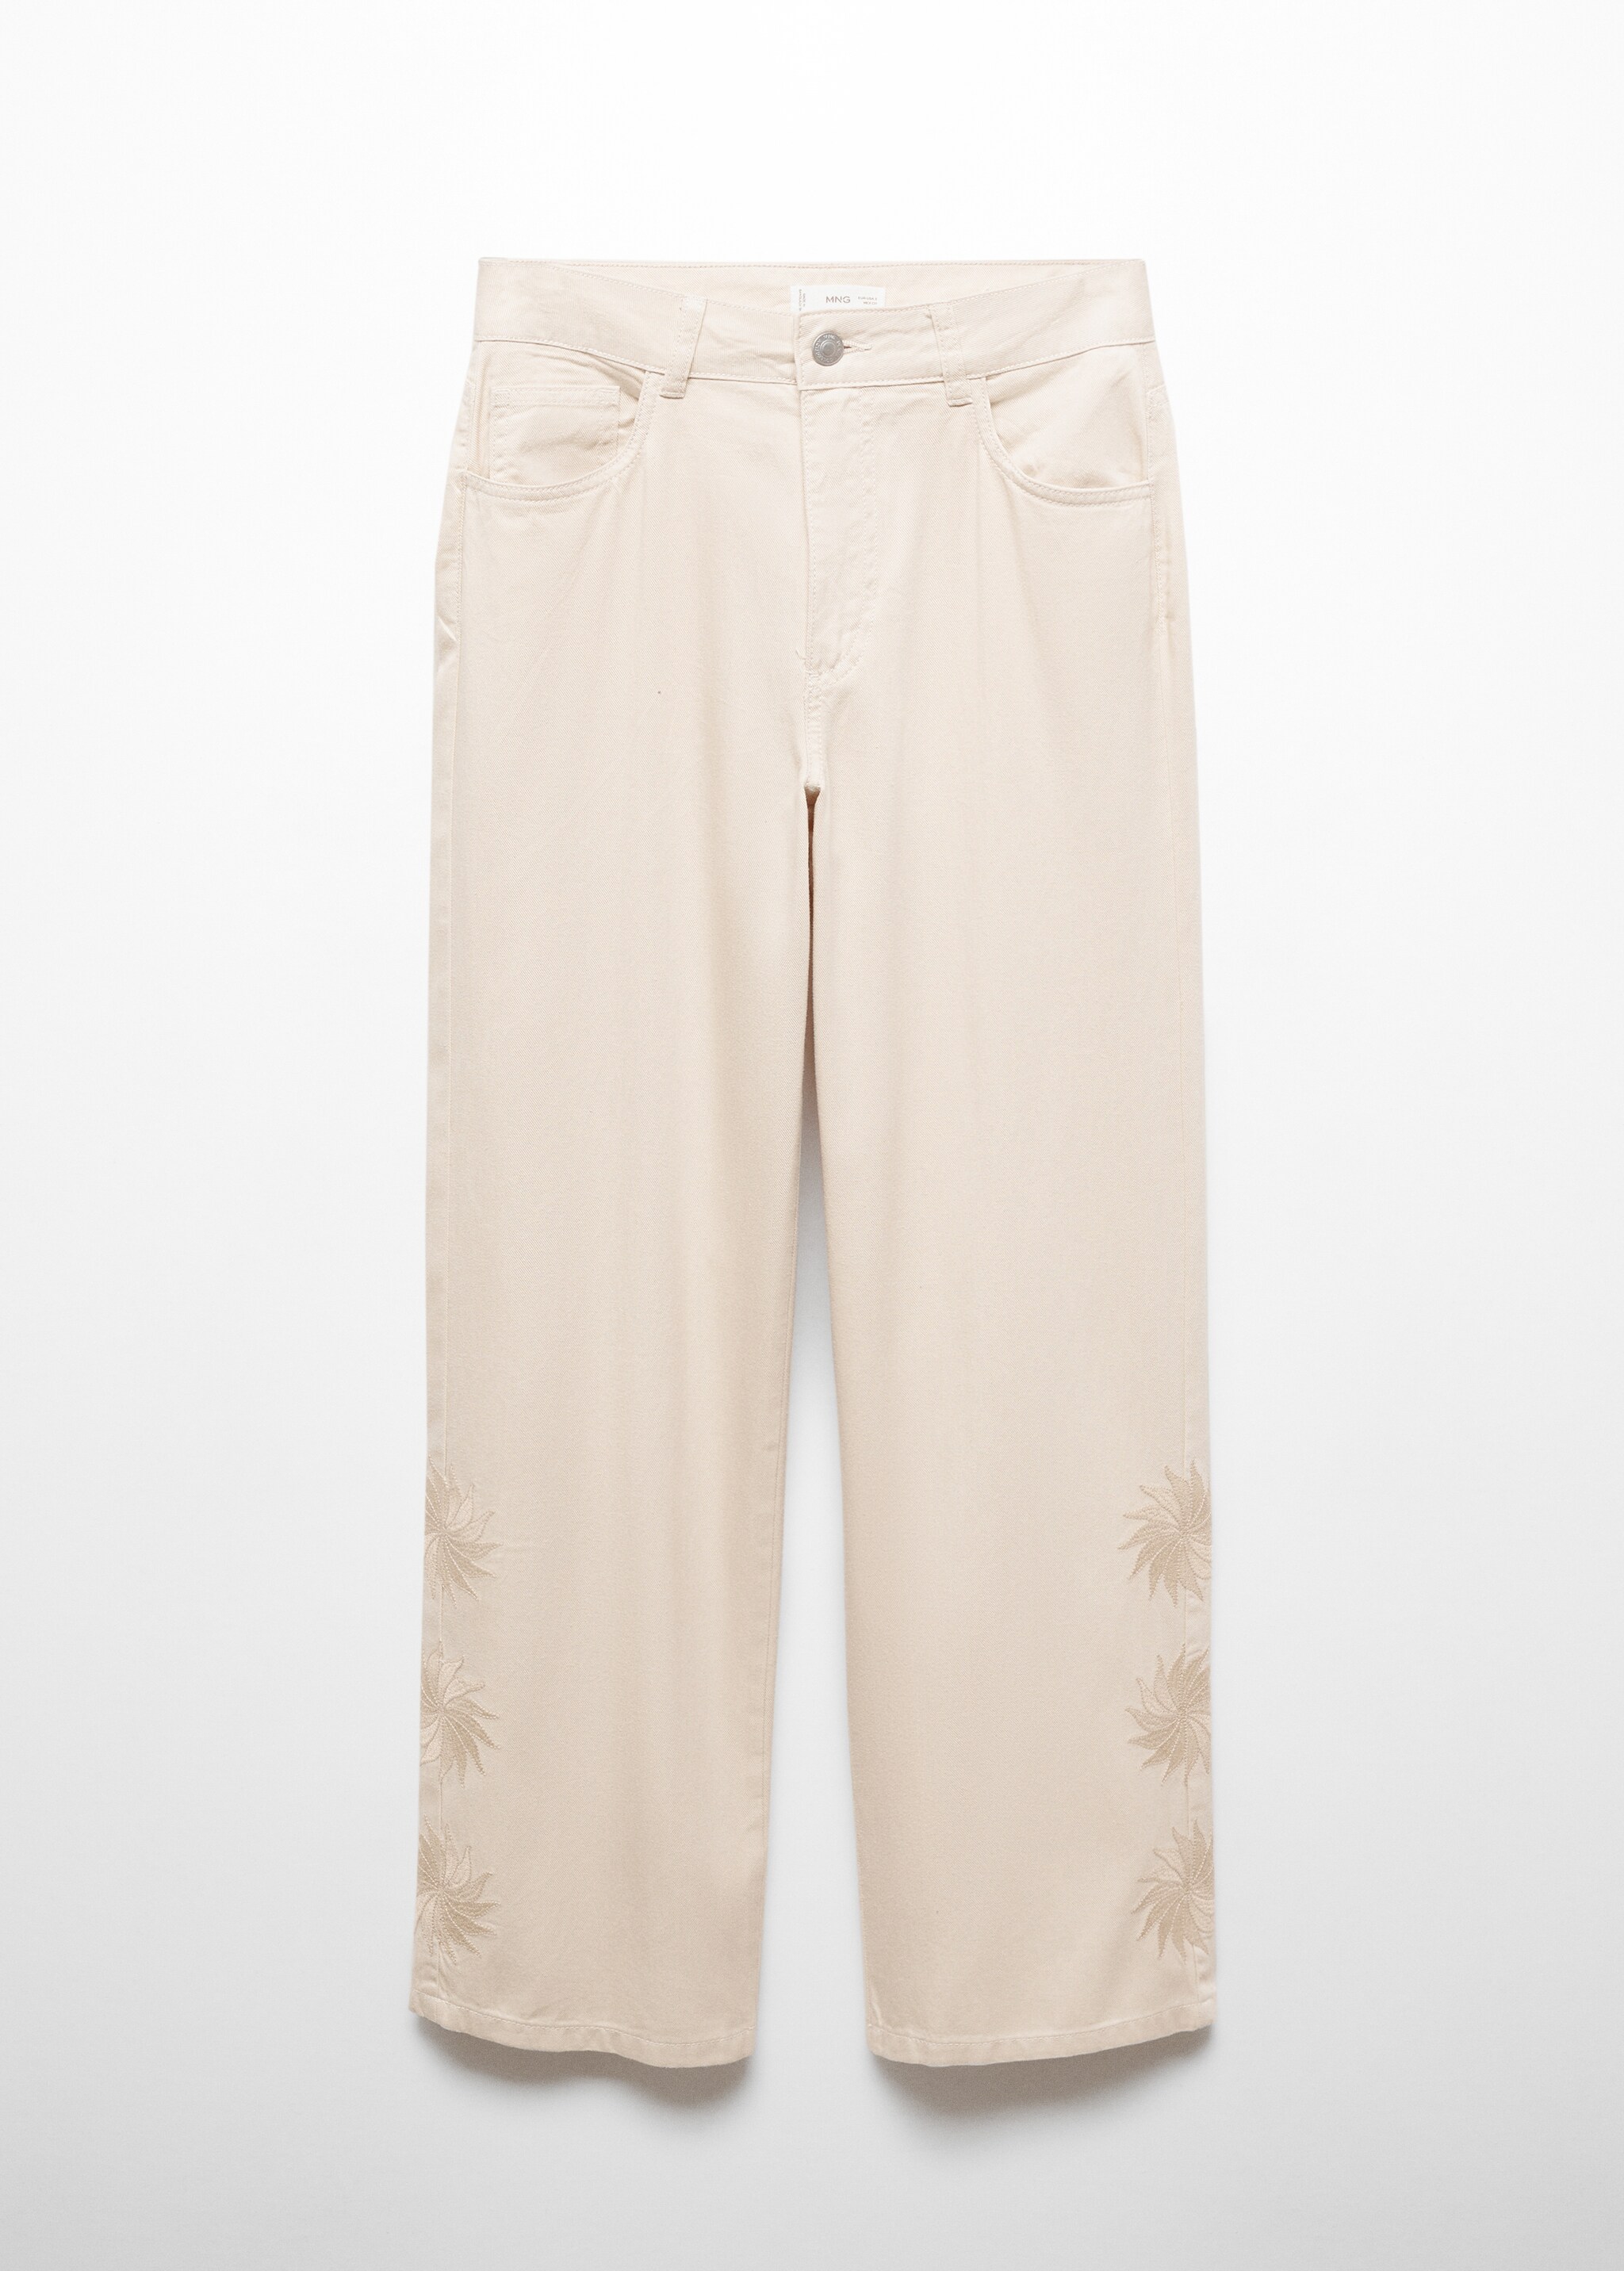 Pantalón algodón bordado - Artículo sin modelo